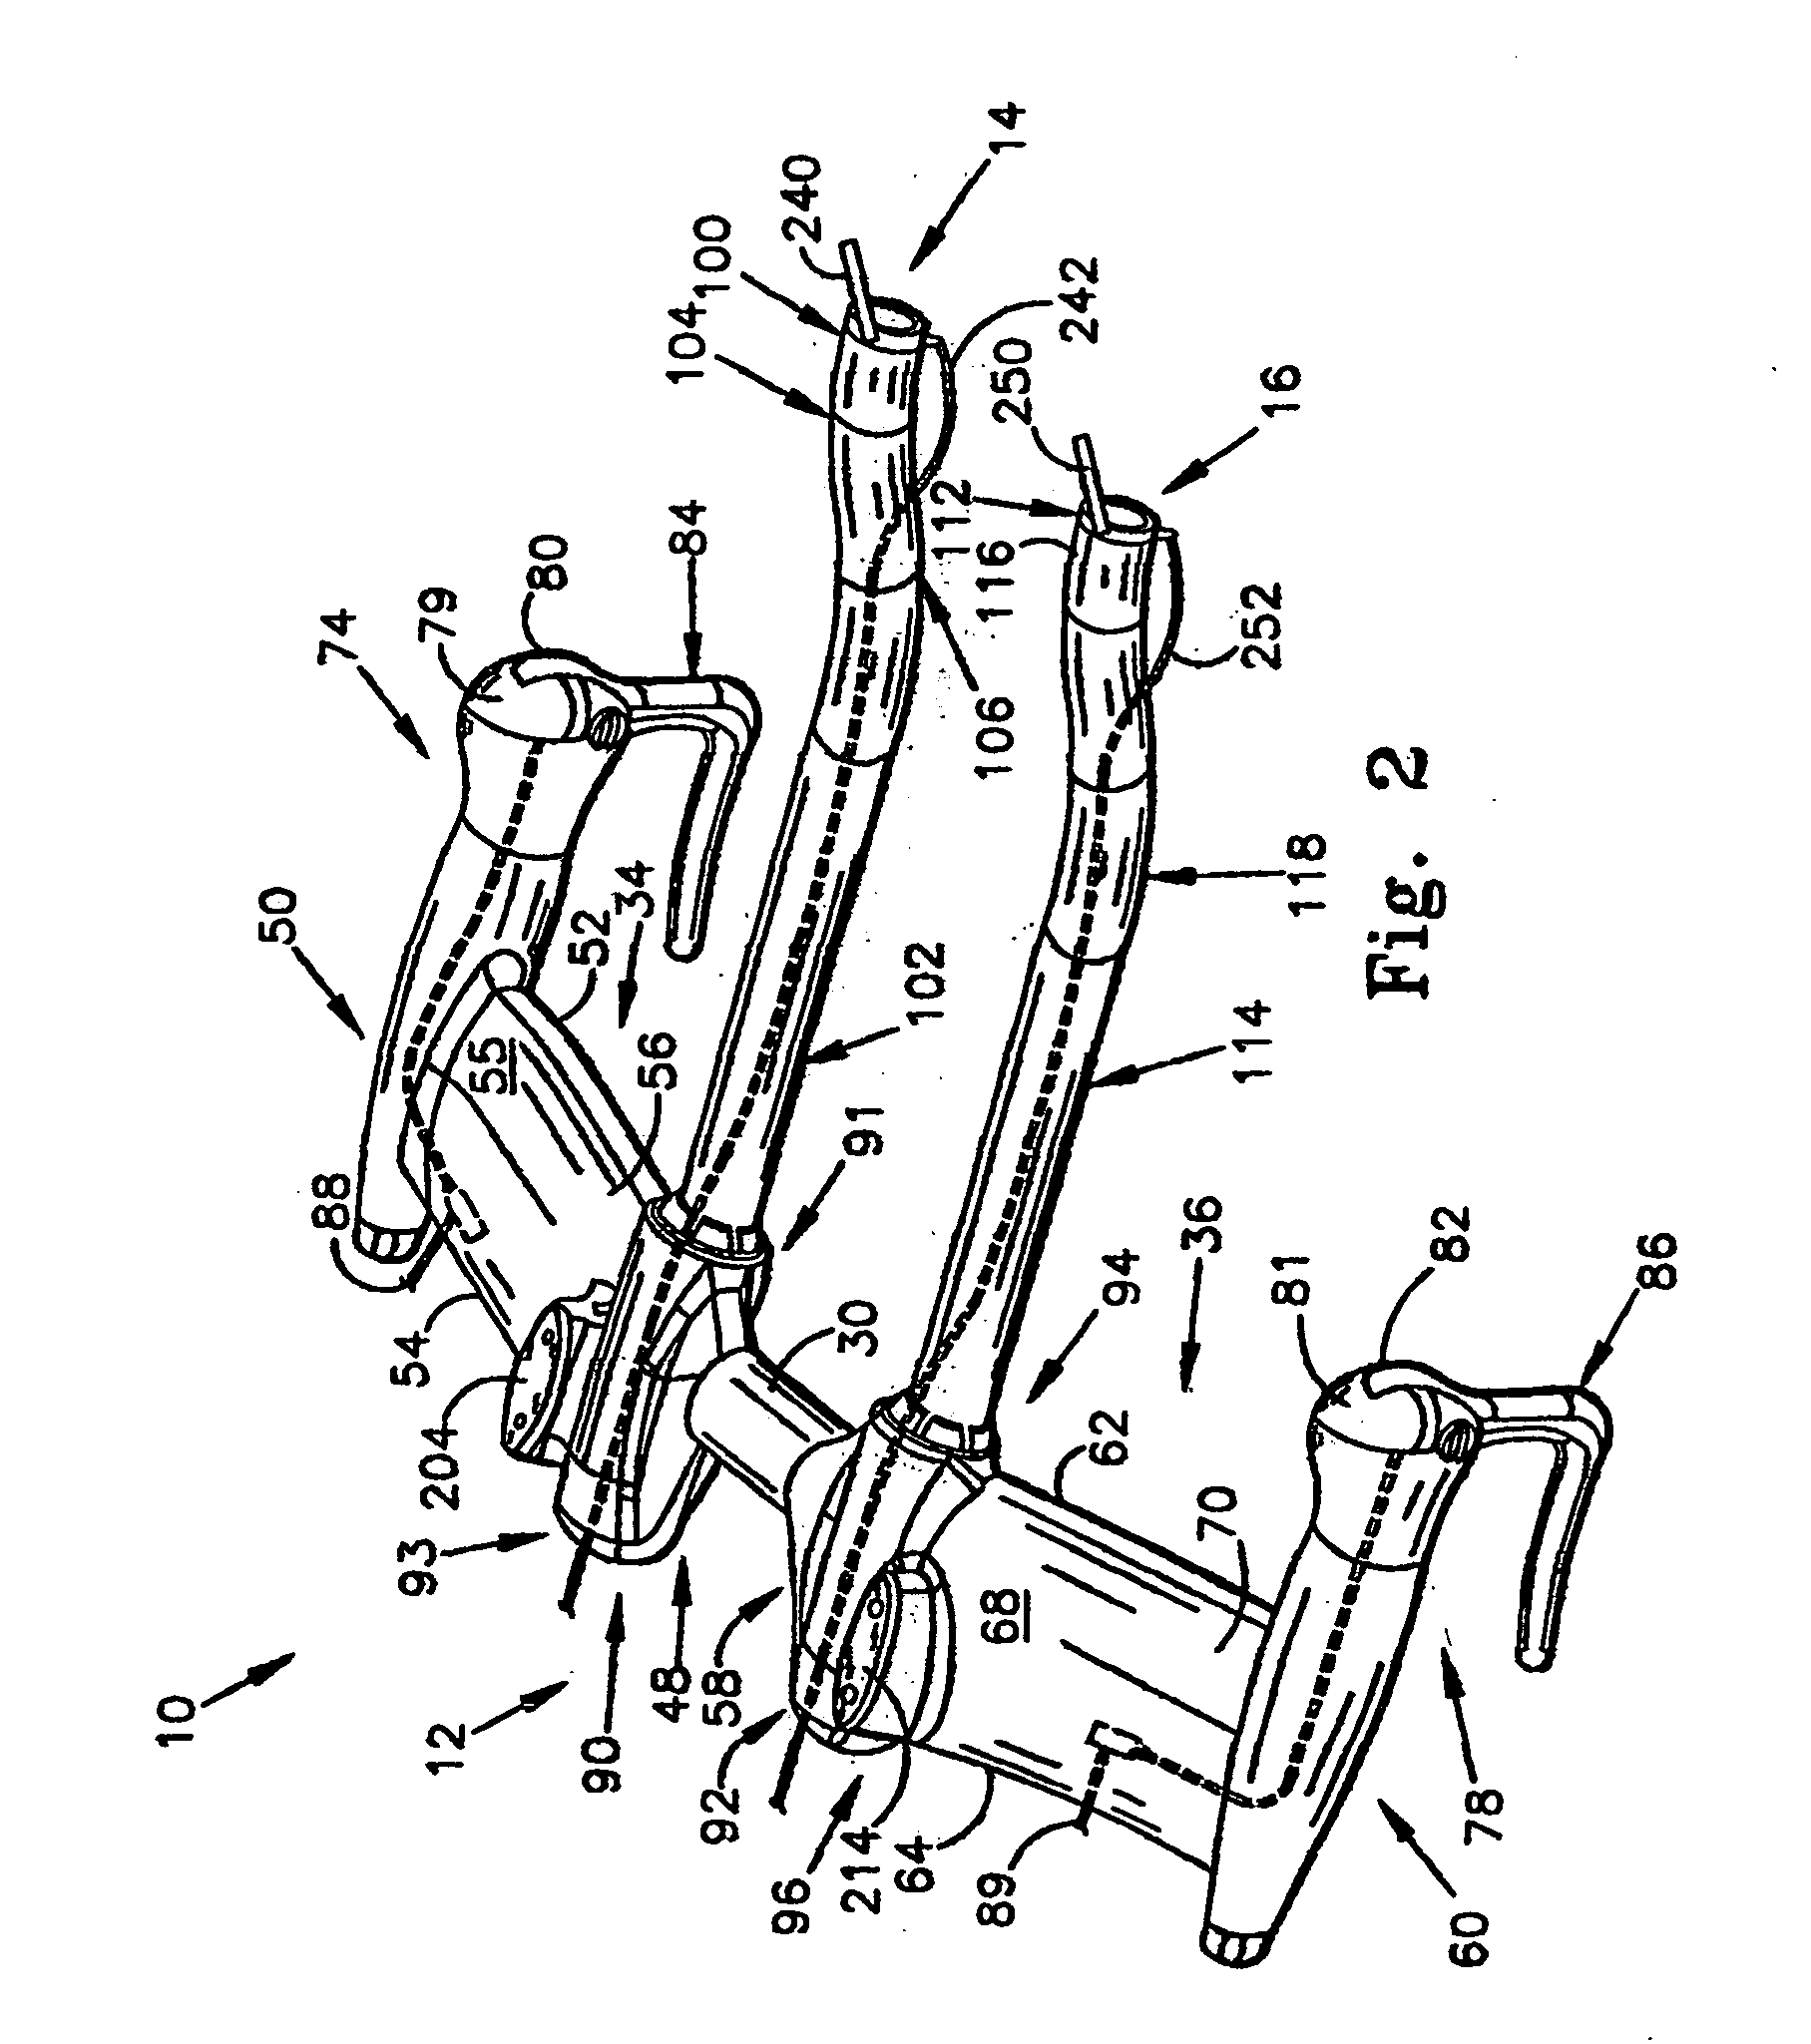 Bicycle handlebar with removable and adjustable aerobar